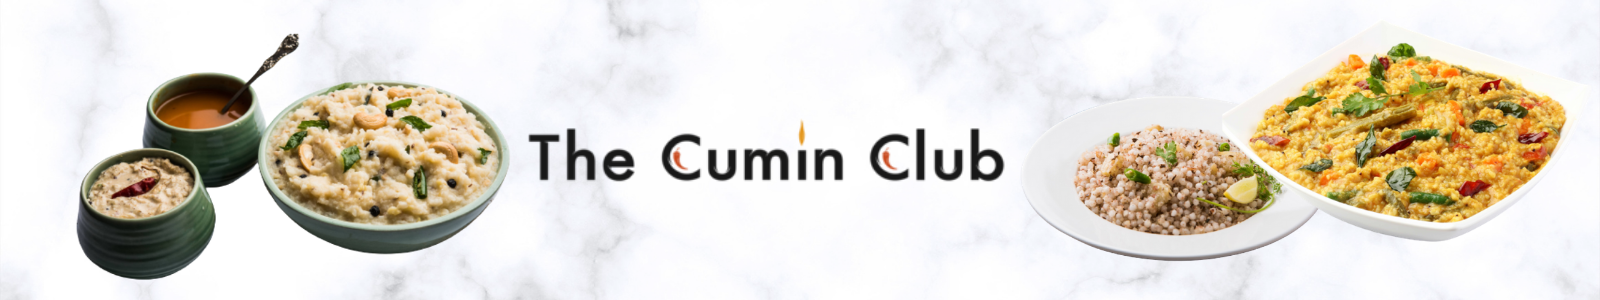 Cumin Club